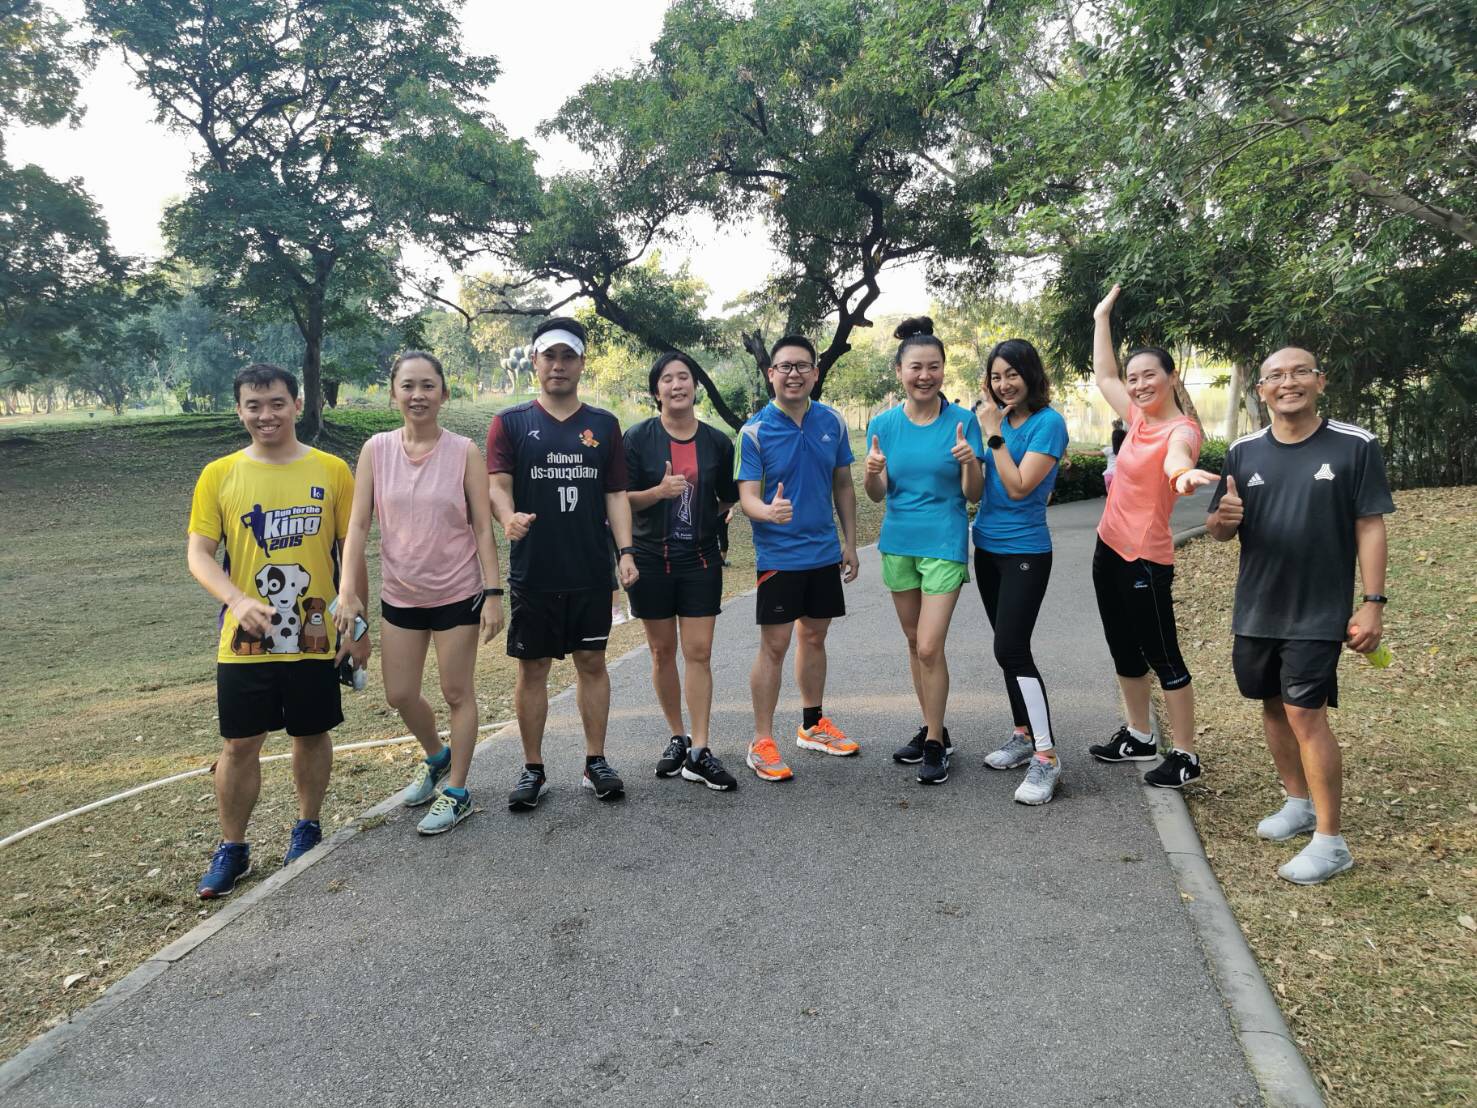 นางนวนันทน์ เนติธนากูล ผู้อำนวยการสำนักฯ ร่วมวิ่งเพื่อสุขภาพภายใต้โครงการ "ชวนกันวิ่ง" ครั้งที่ 5